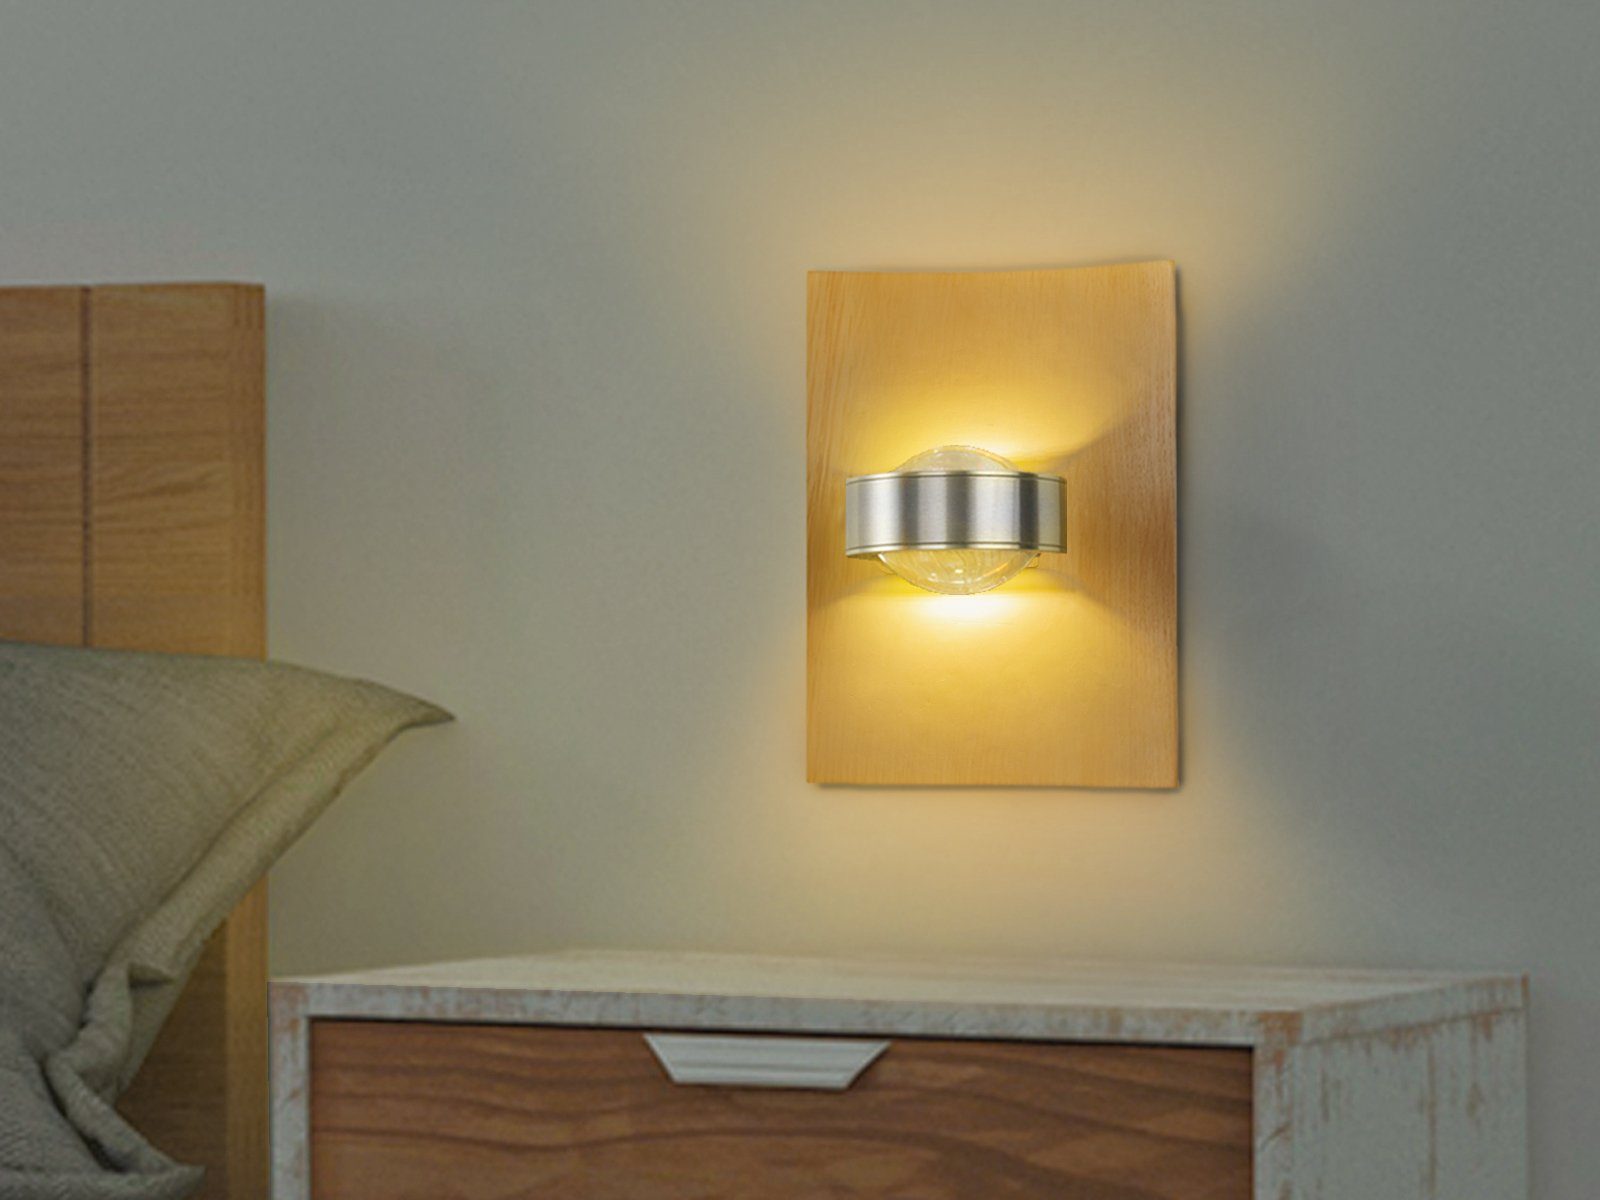 SET 2er einstellbar, ausgefallen Lichtfarbe indirekte Holz-Lampen integriert, Warmweiß-Neutralweiß Wand-Beleuchtung meineWunschleuchte fest Eiche-Brett Farbwechsel, Wandleuchte, LED LED